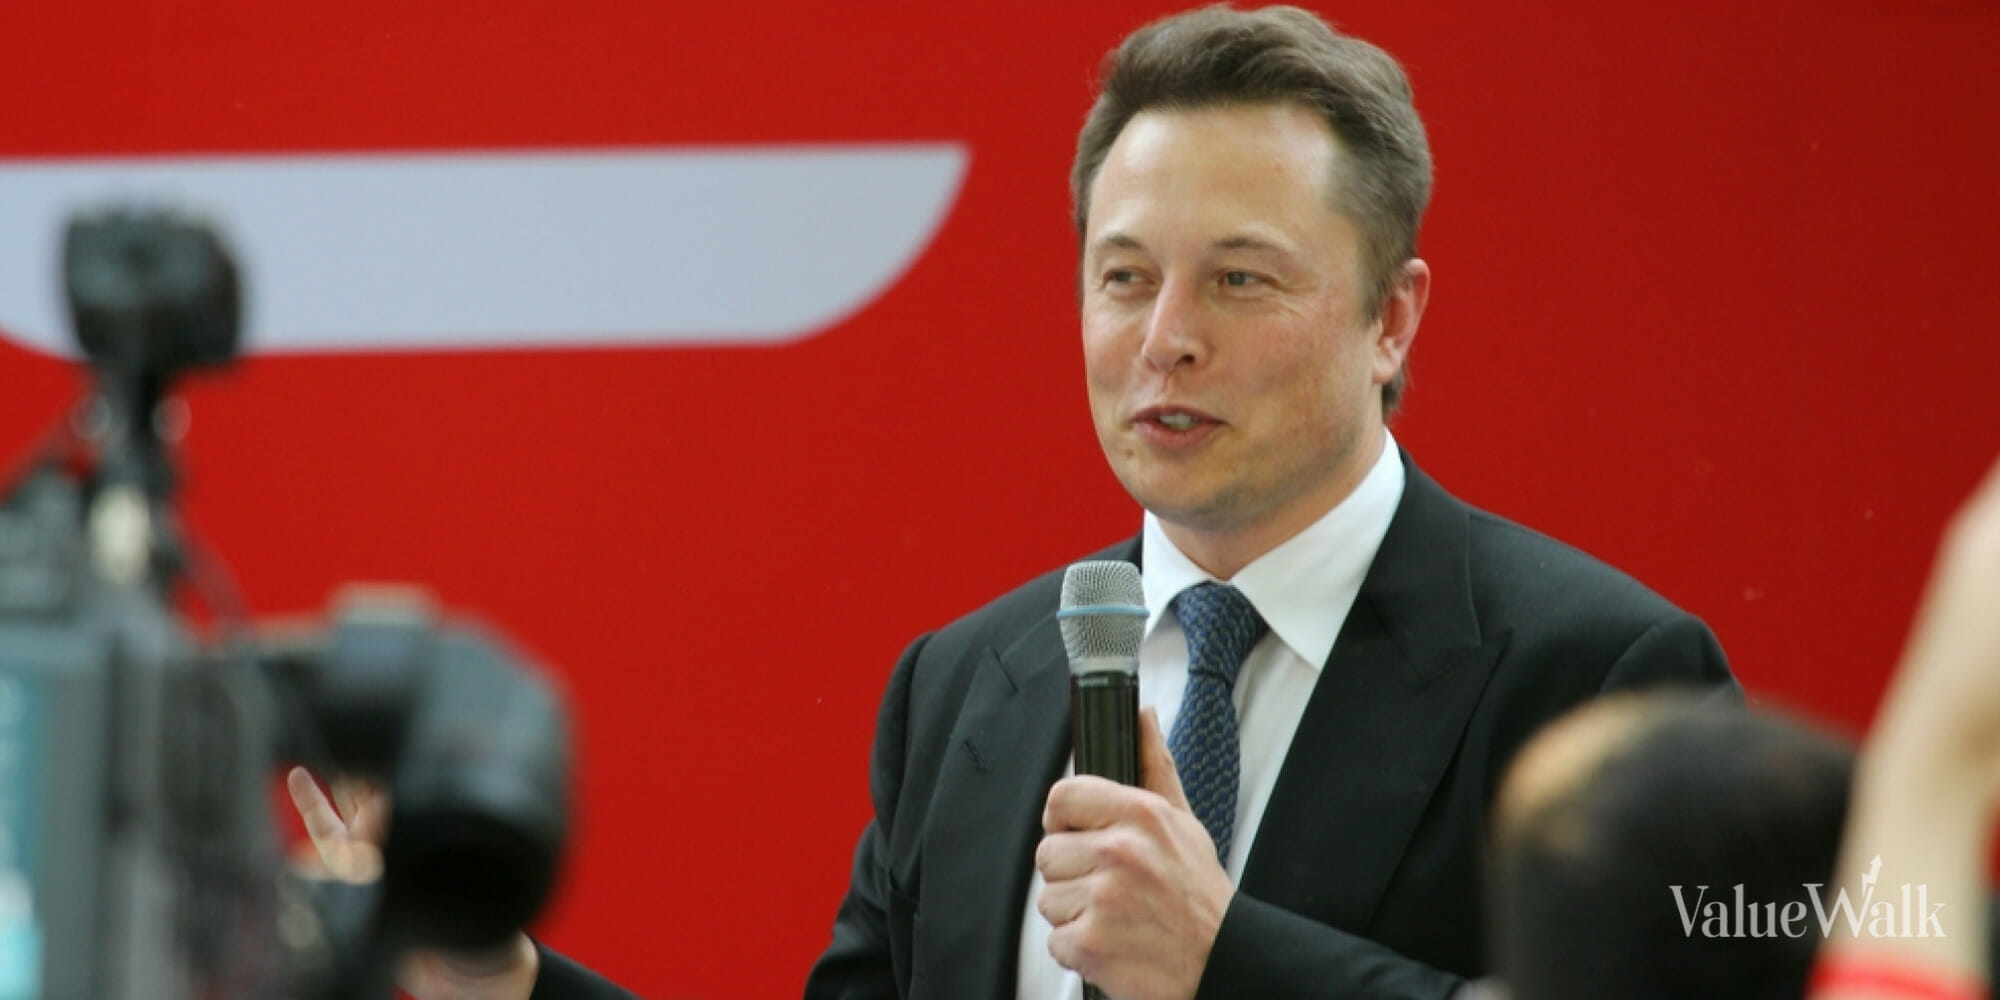 elon musk salary per hour Elon Musk's Political Influence